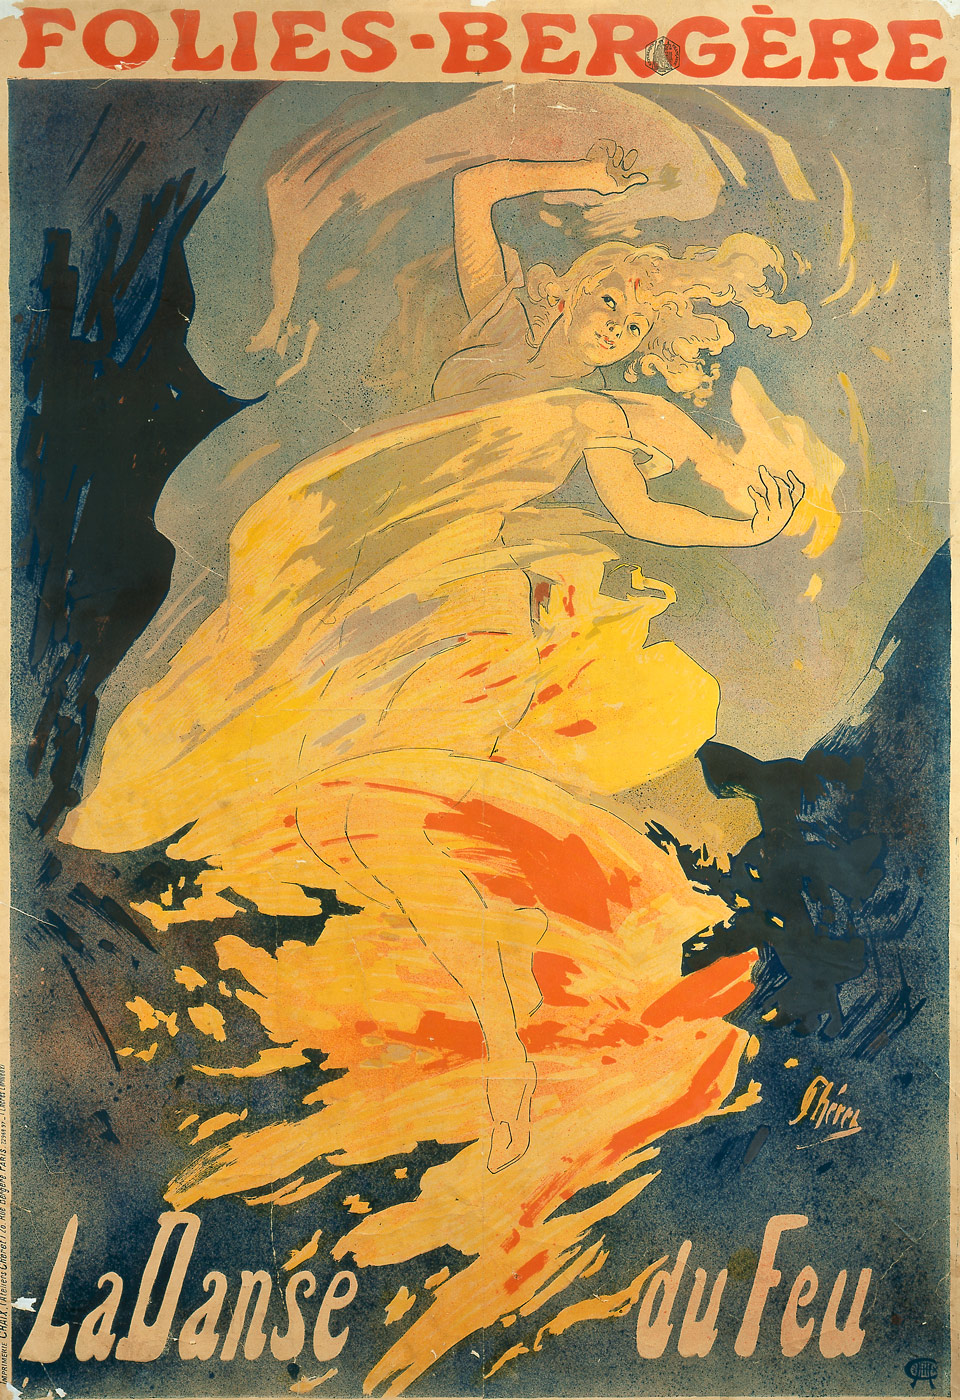 Jules Cheret: Folies-Bergère. La danse du feu, 1897